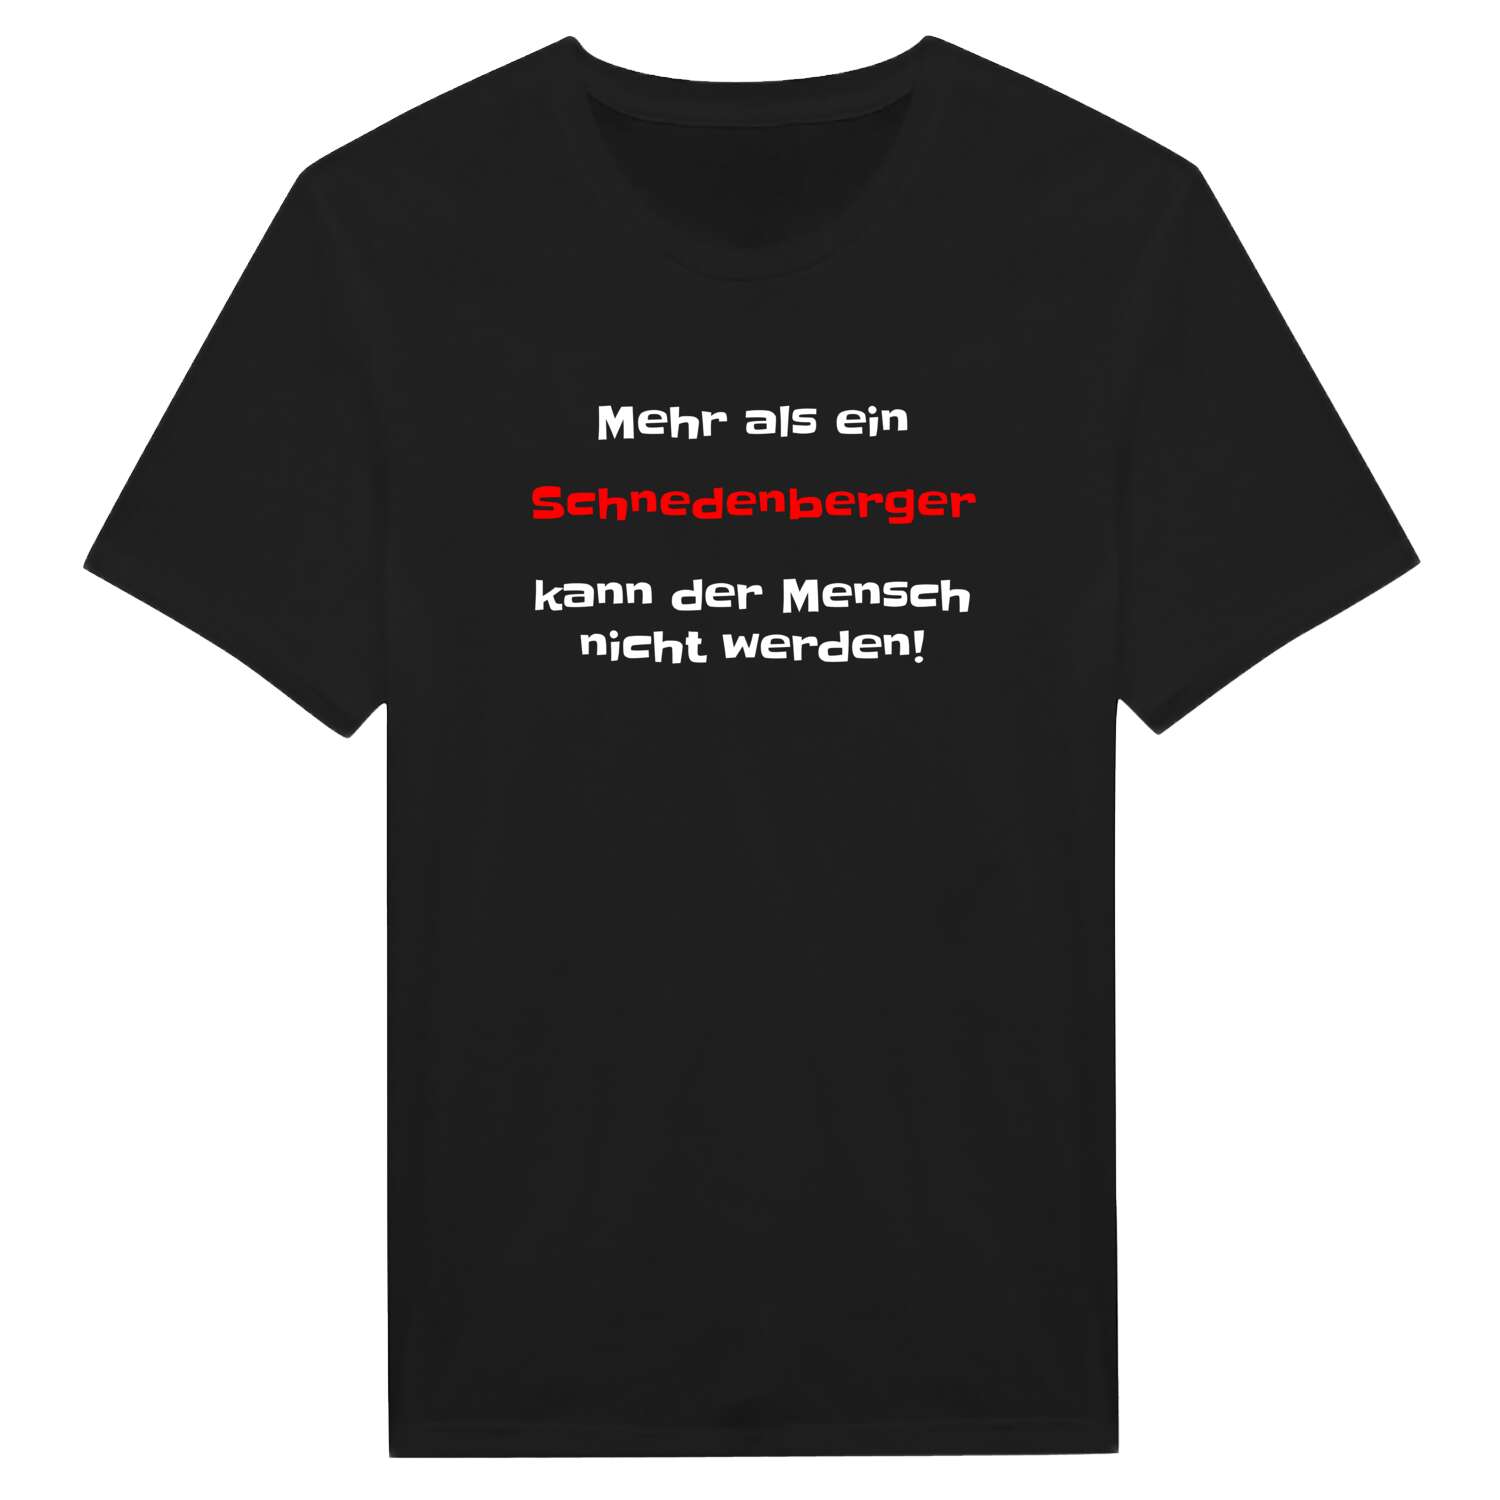 Schnedenberg T-Shirt »Mehr als ein«